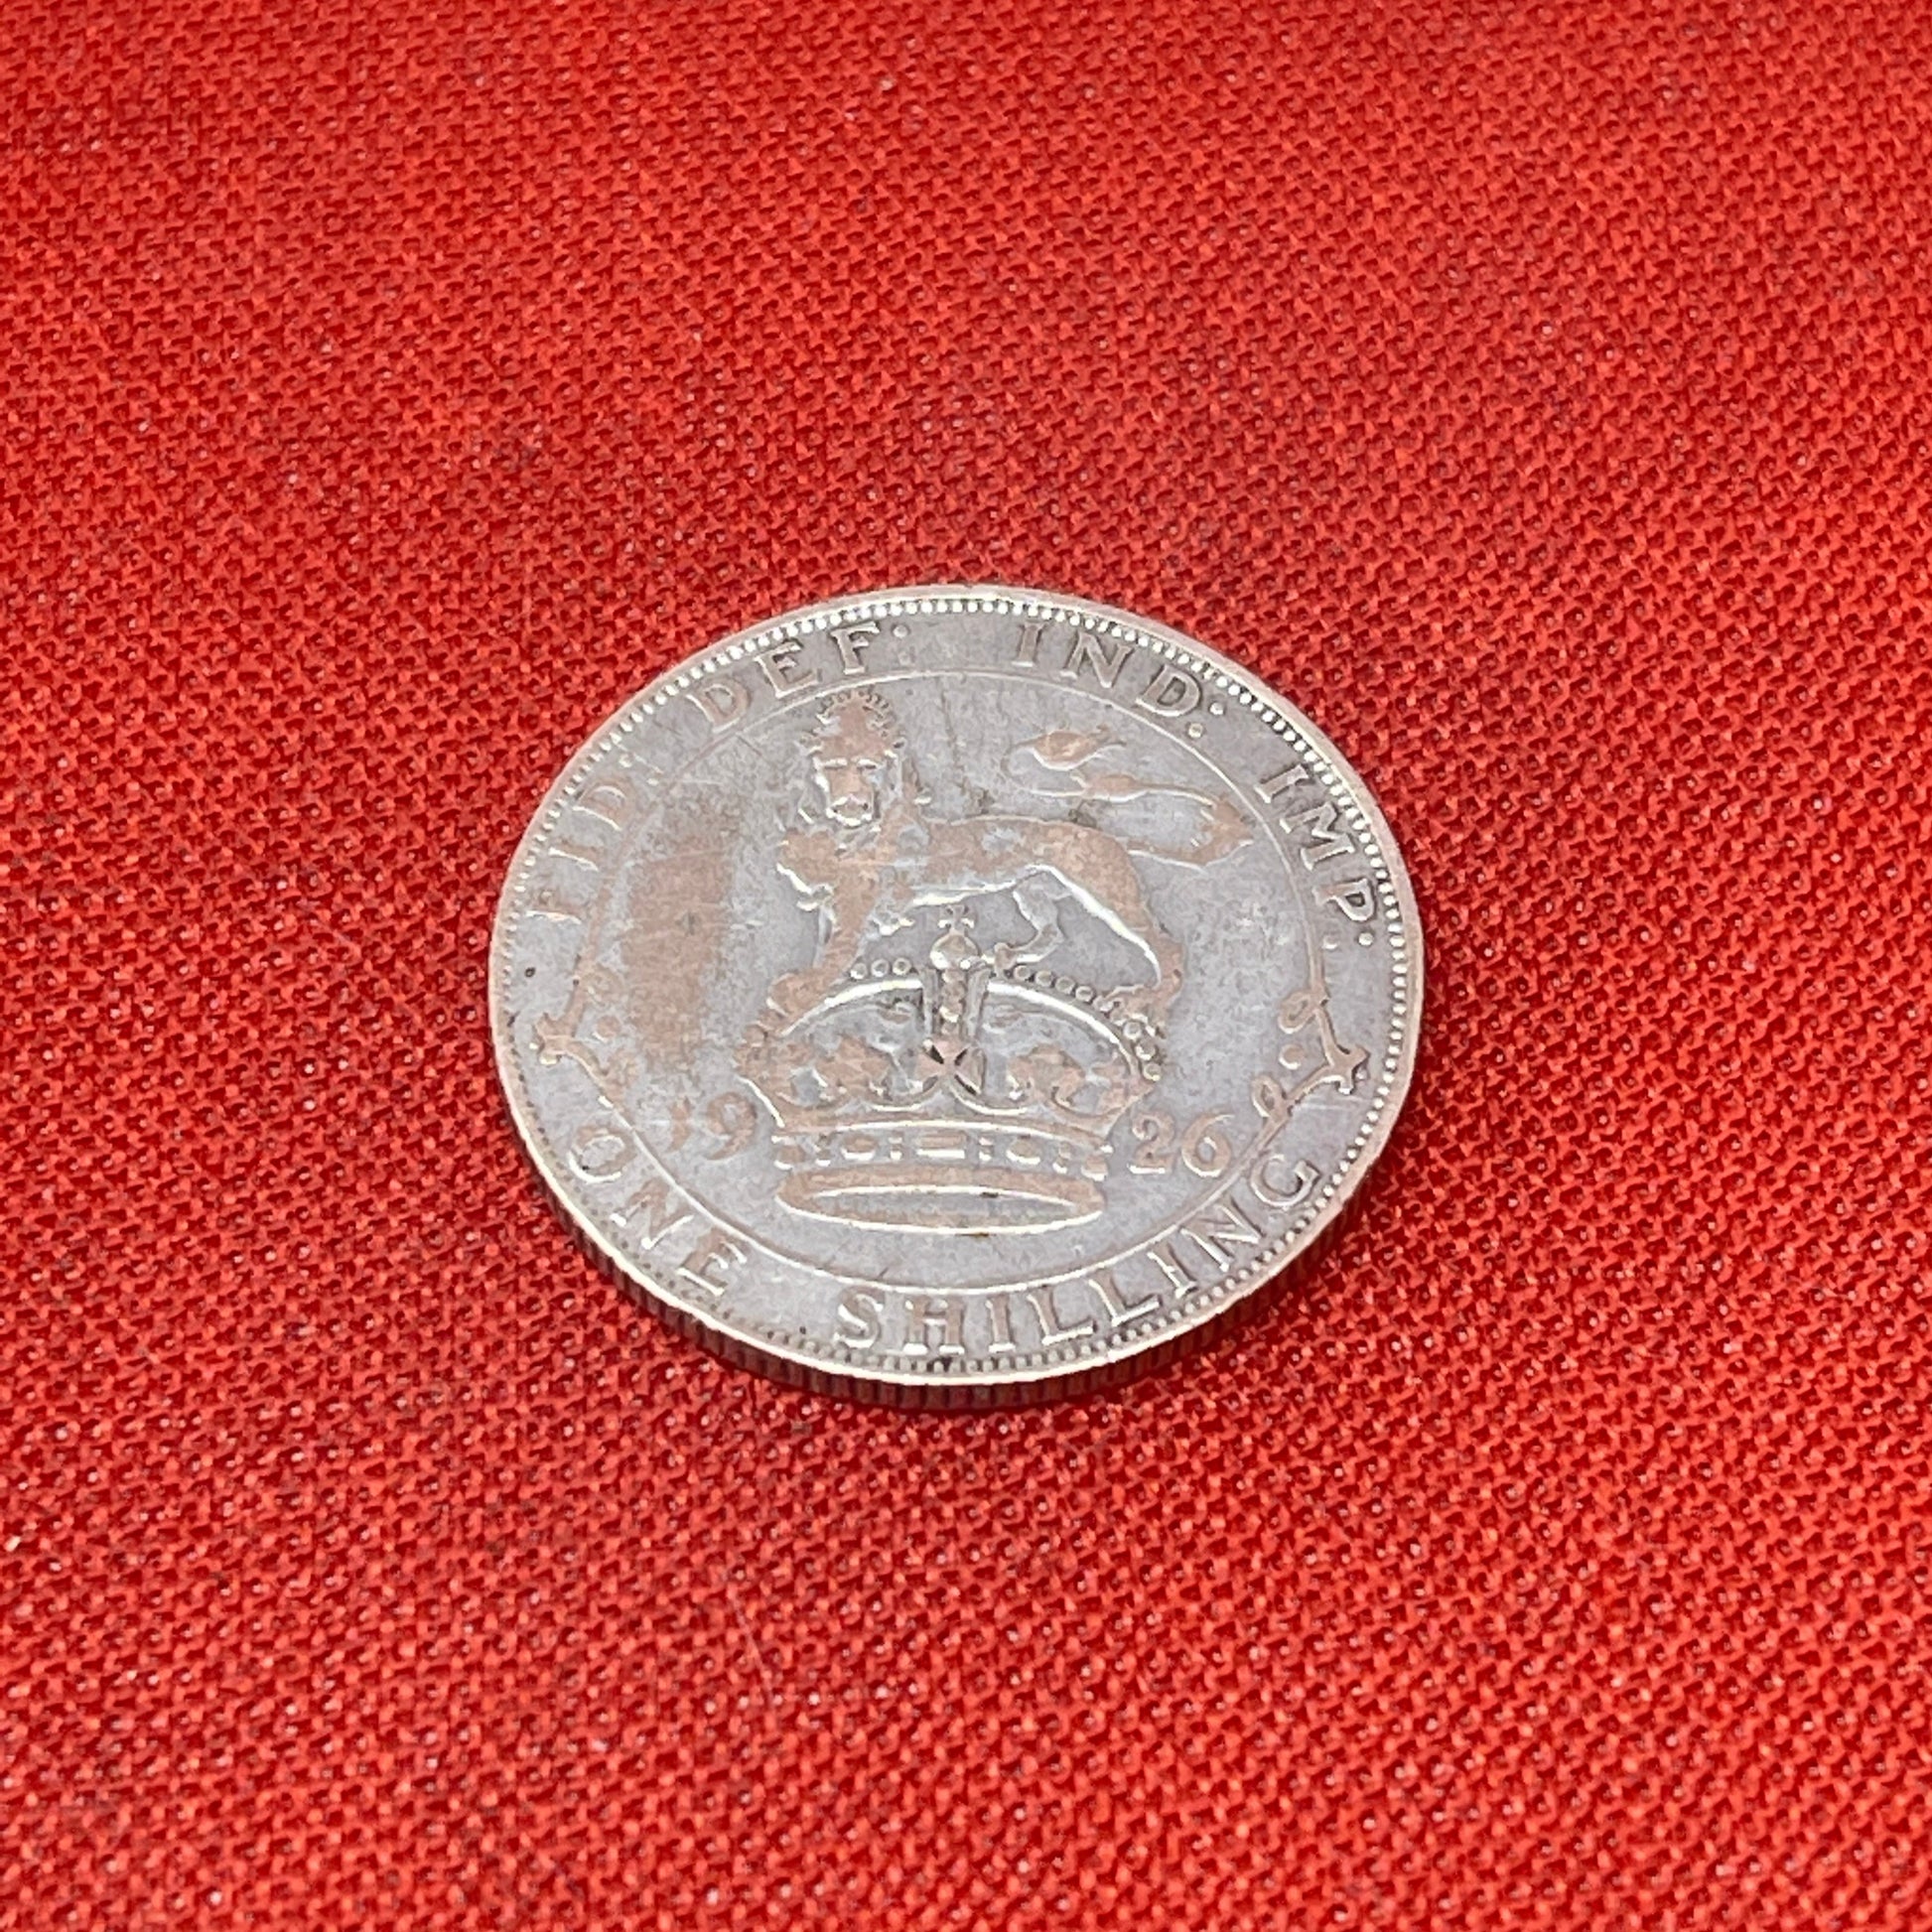 1926 King George V One Shilling